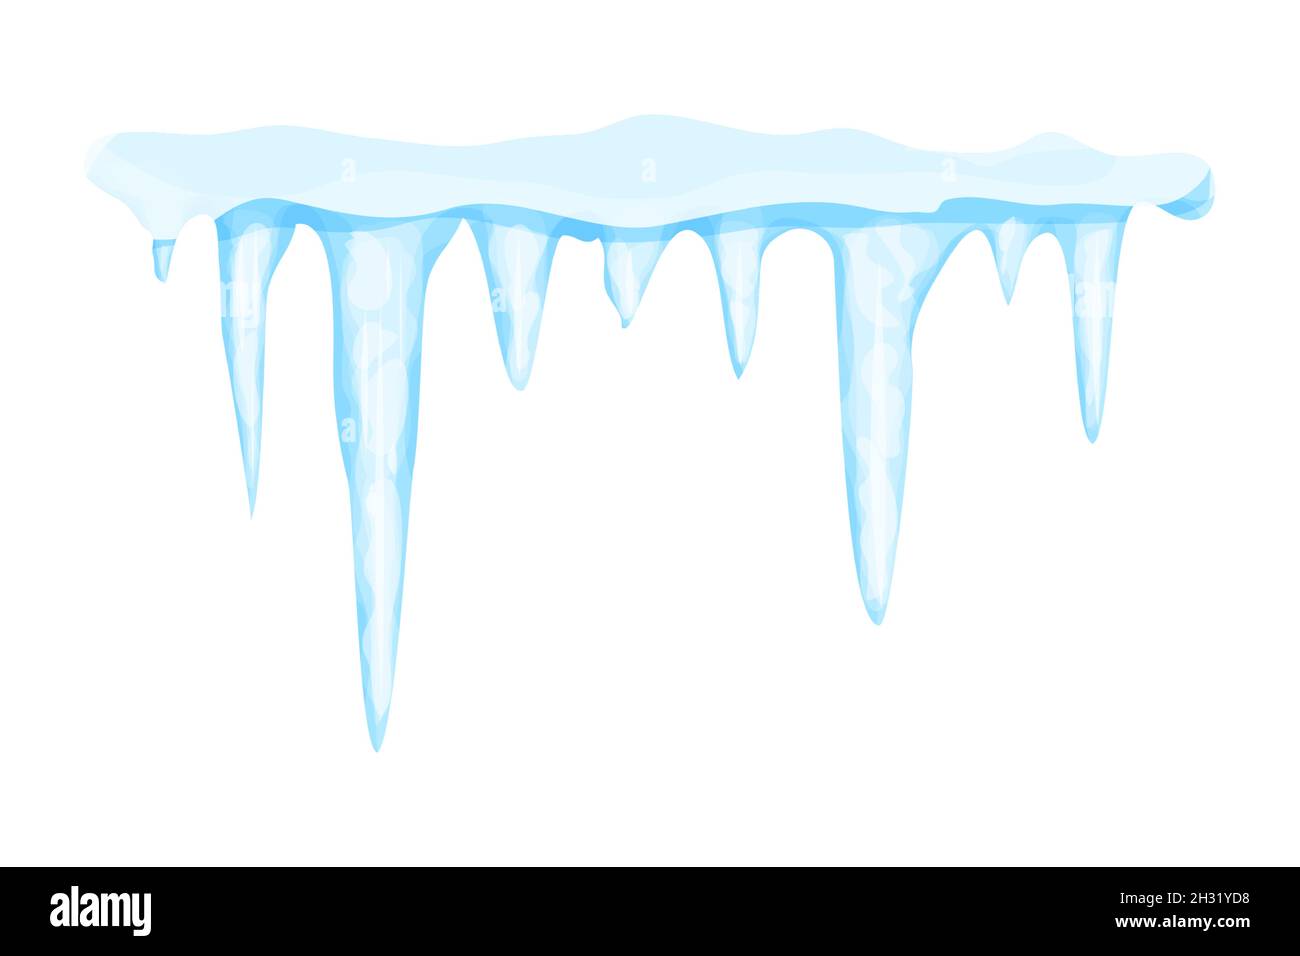 Eiszapfen mit Schnee-Winterdekoration, gefrorenes Wasser in Cartoon-Stil isoliert auf weißem Hintergrund. Eiskristalle, hängendes Element. Strukturiert, glänzend. Vektorgrafik Stock Vektor